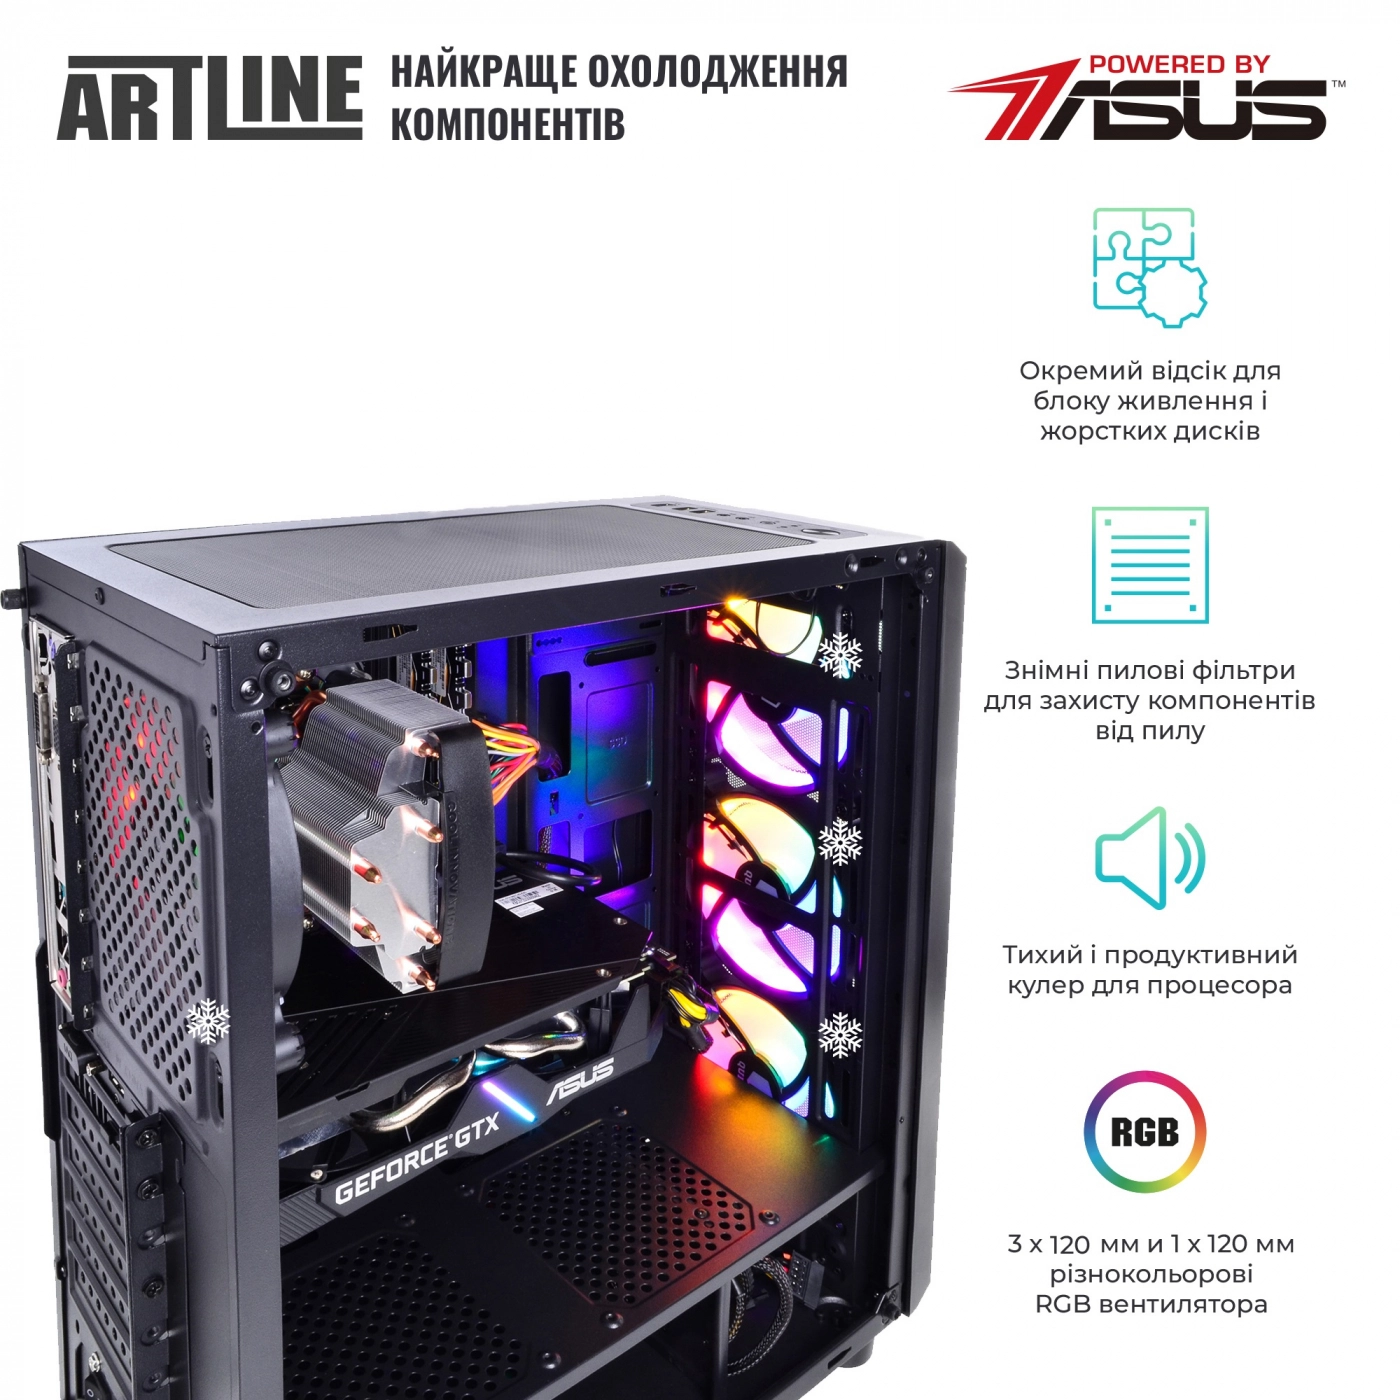 Купить Компьютер ARTLINE Gaming X48v15 - фото 3